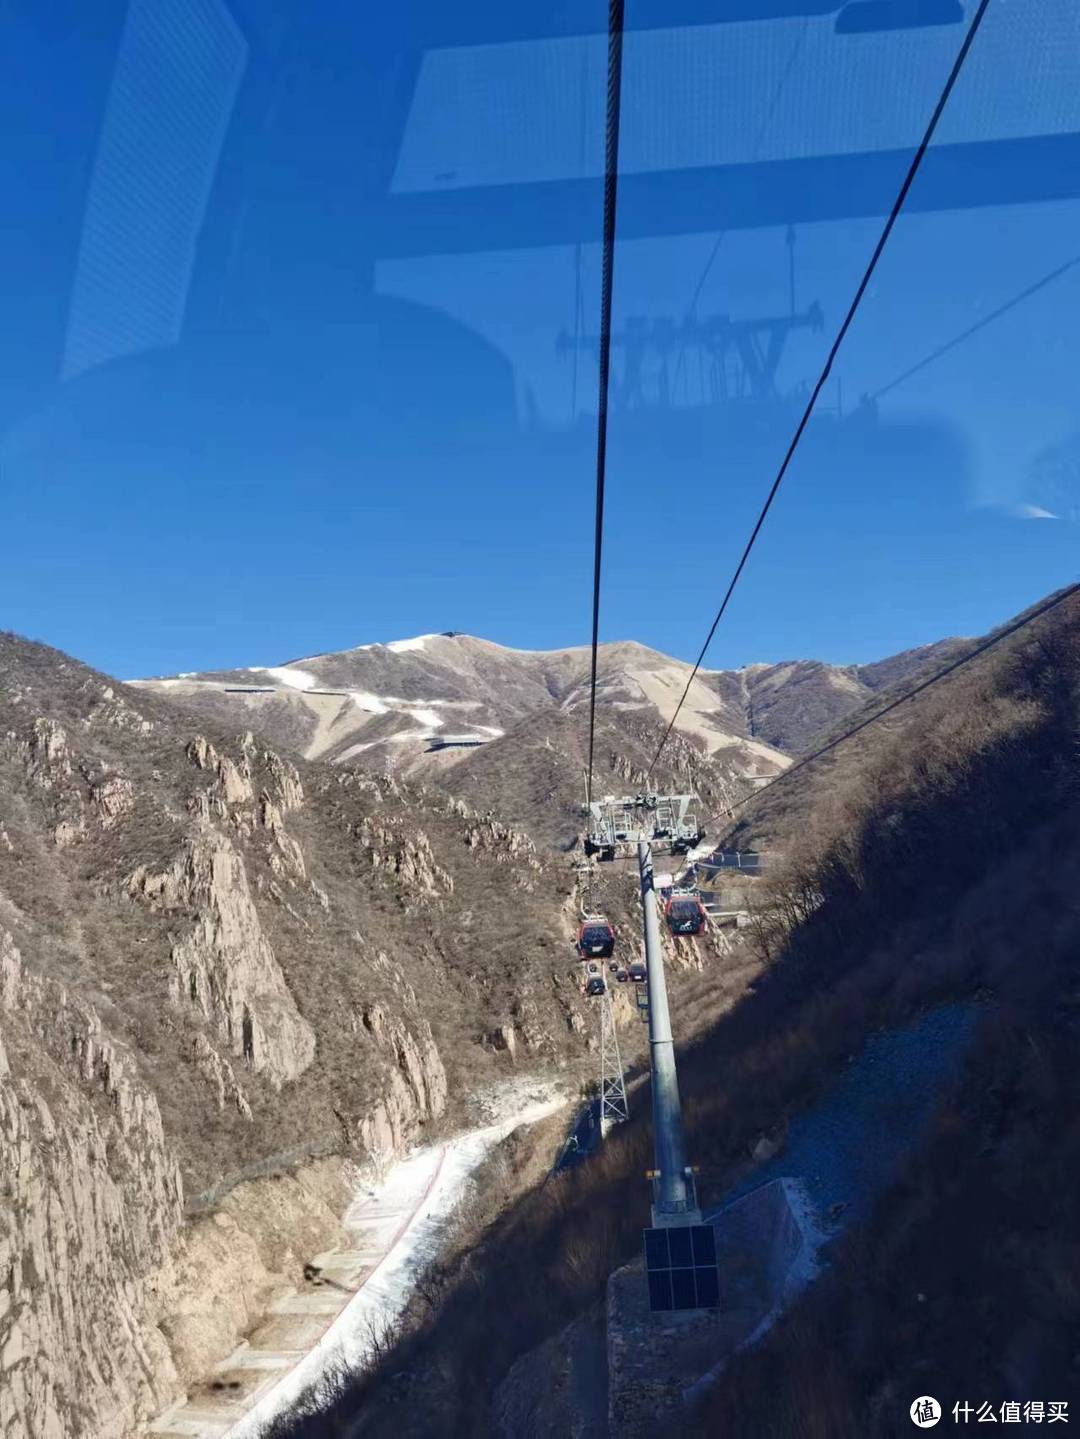 延庆的高山滑雪中心